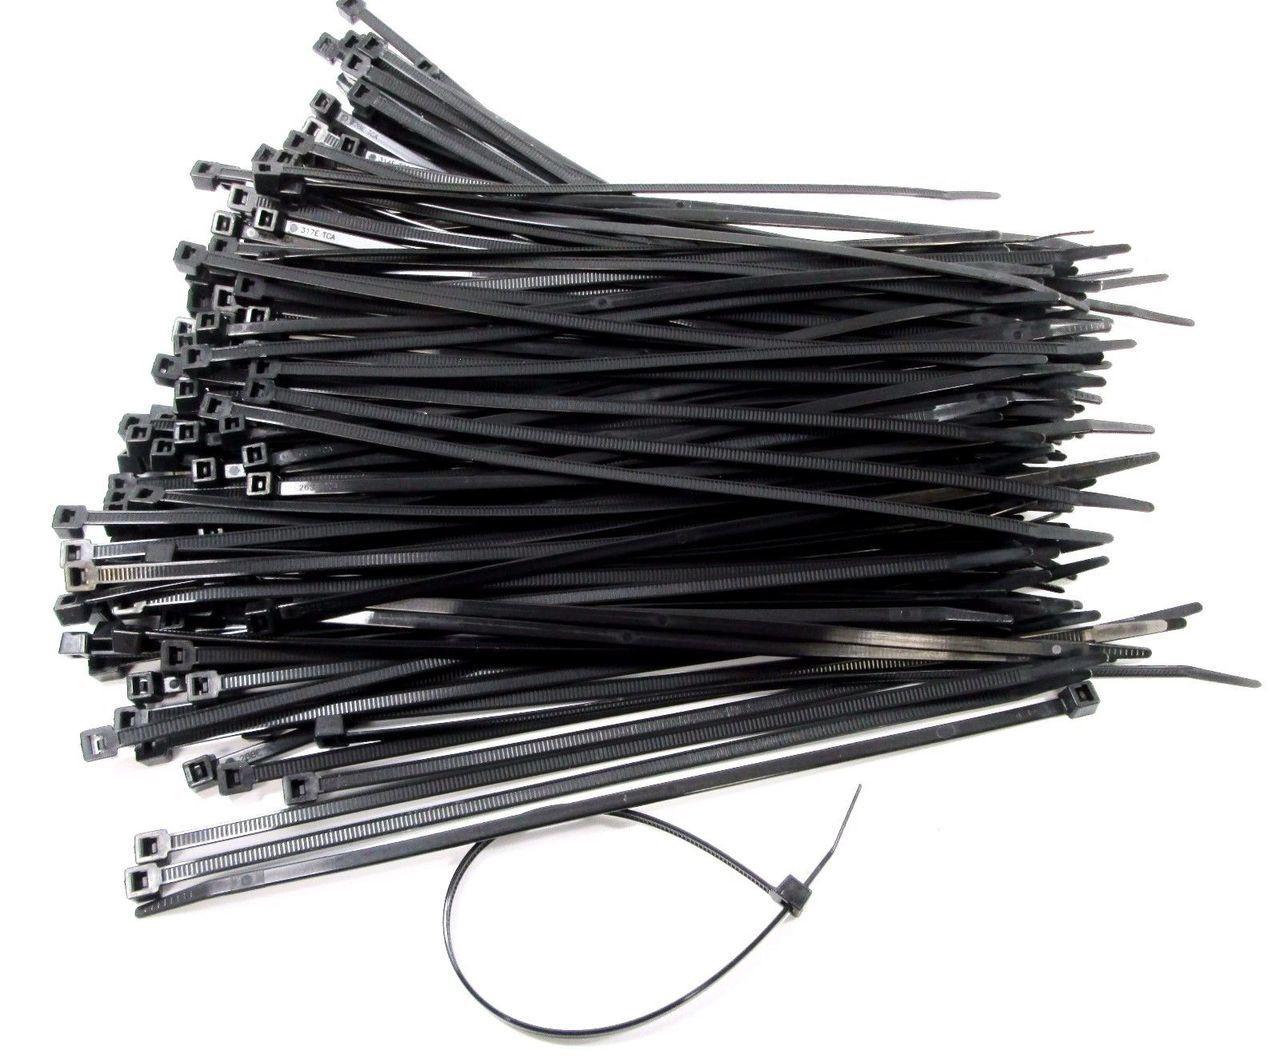 Hellermann Tyton 250mm x 5mm Black Cable Ties Zip Ties Pack of 200 400 or 1000 